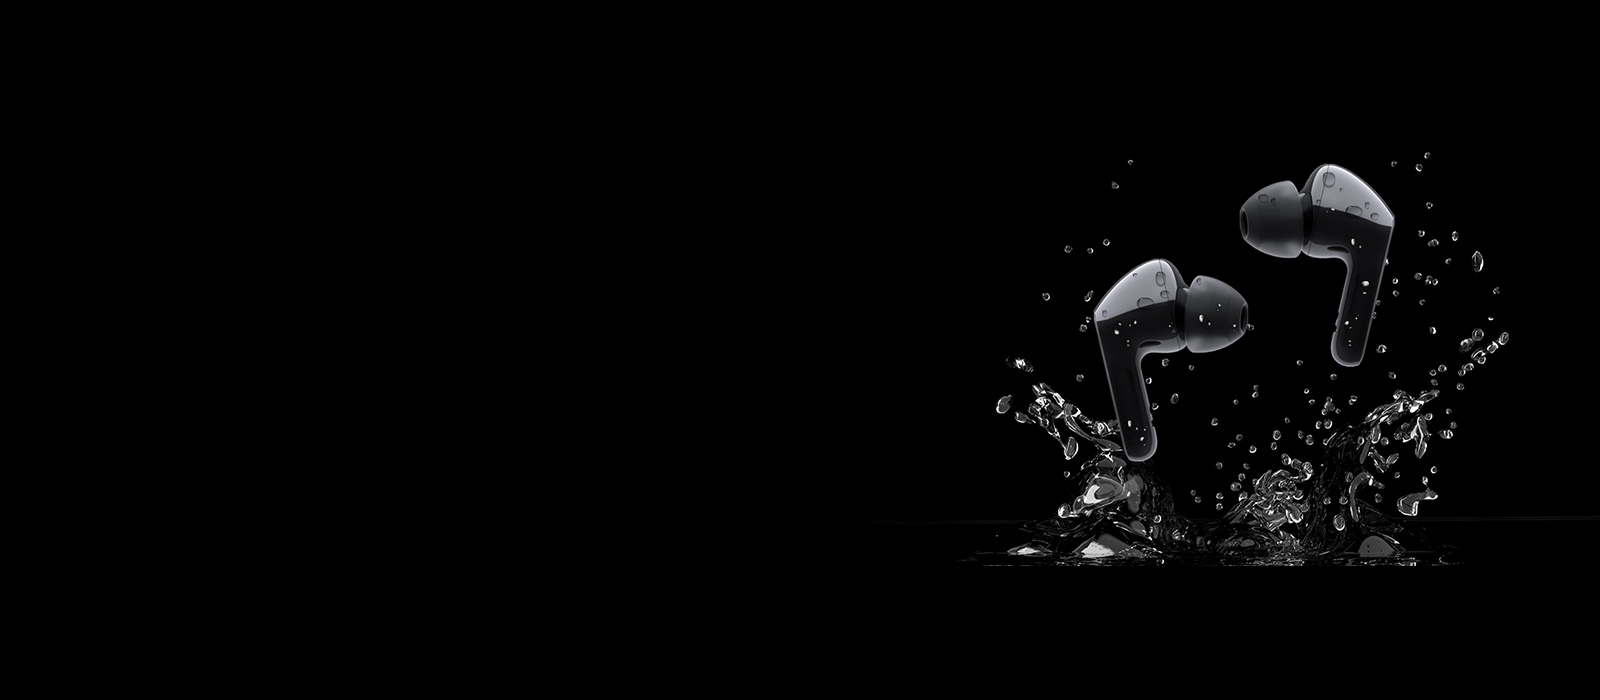 Изображение двух черных наушников в брызгах воды